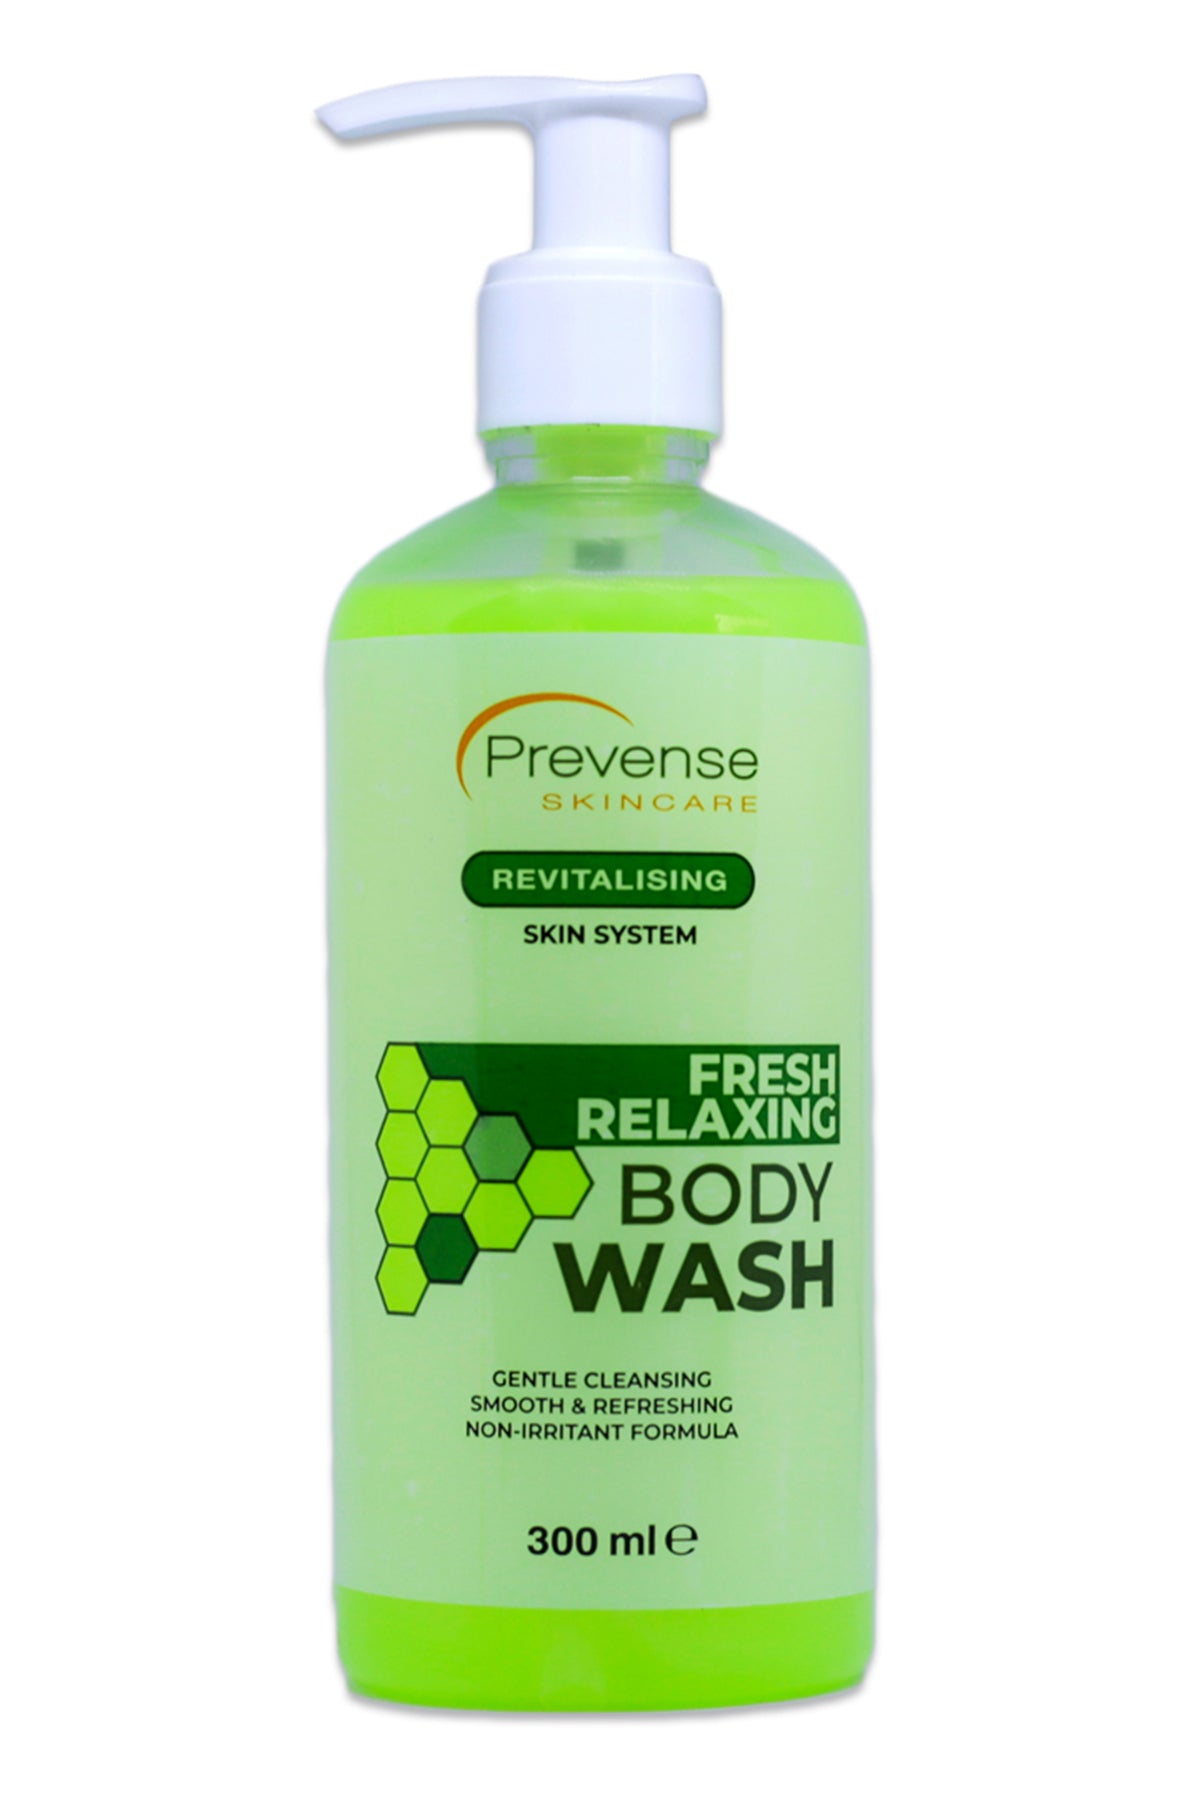 Prevense Fresh Relaxing Body Wash